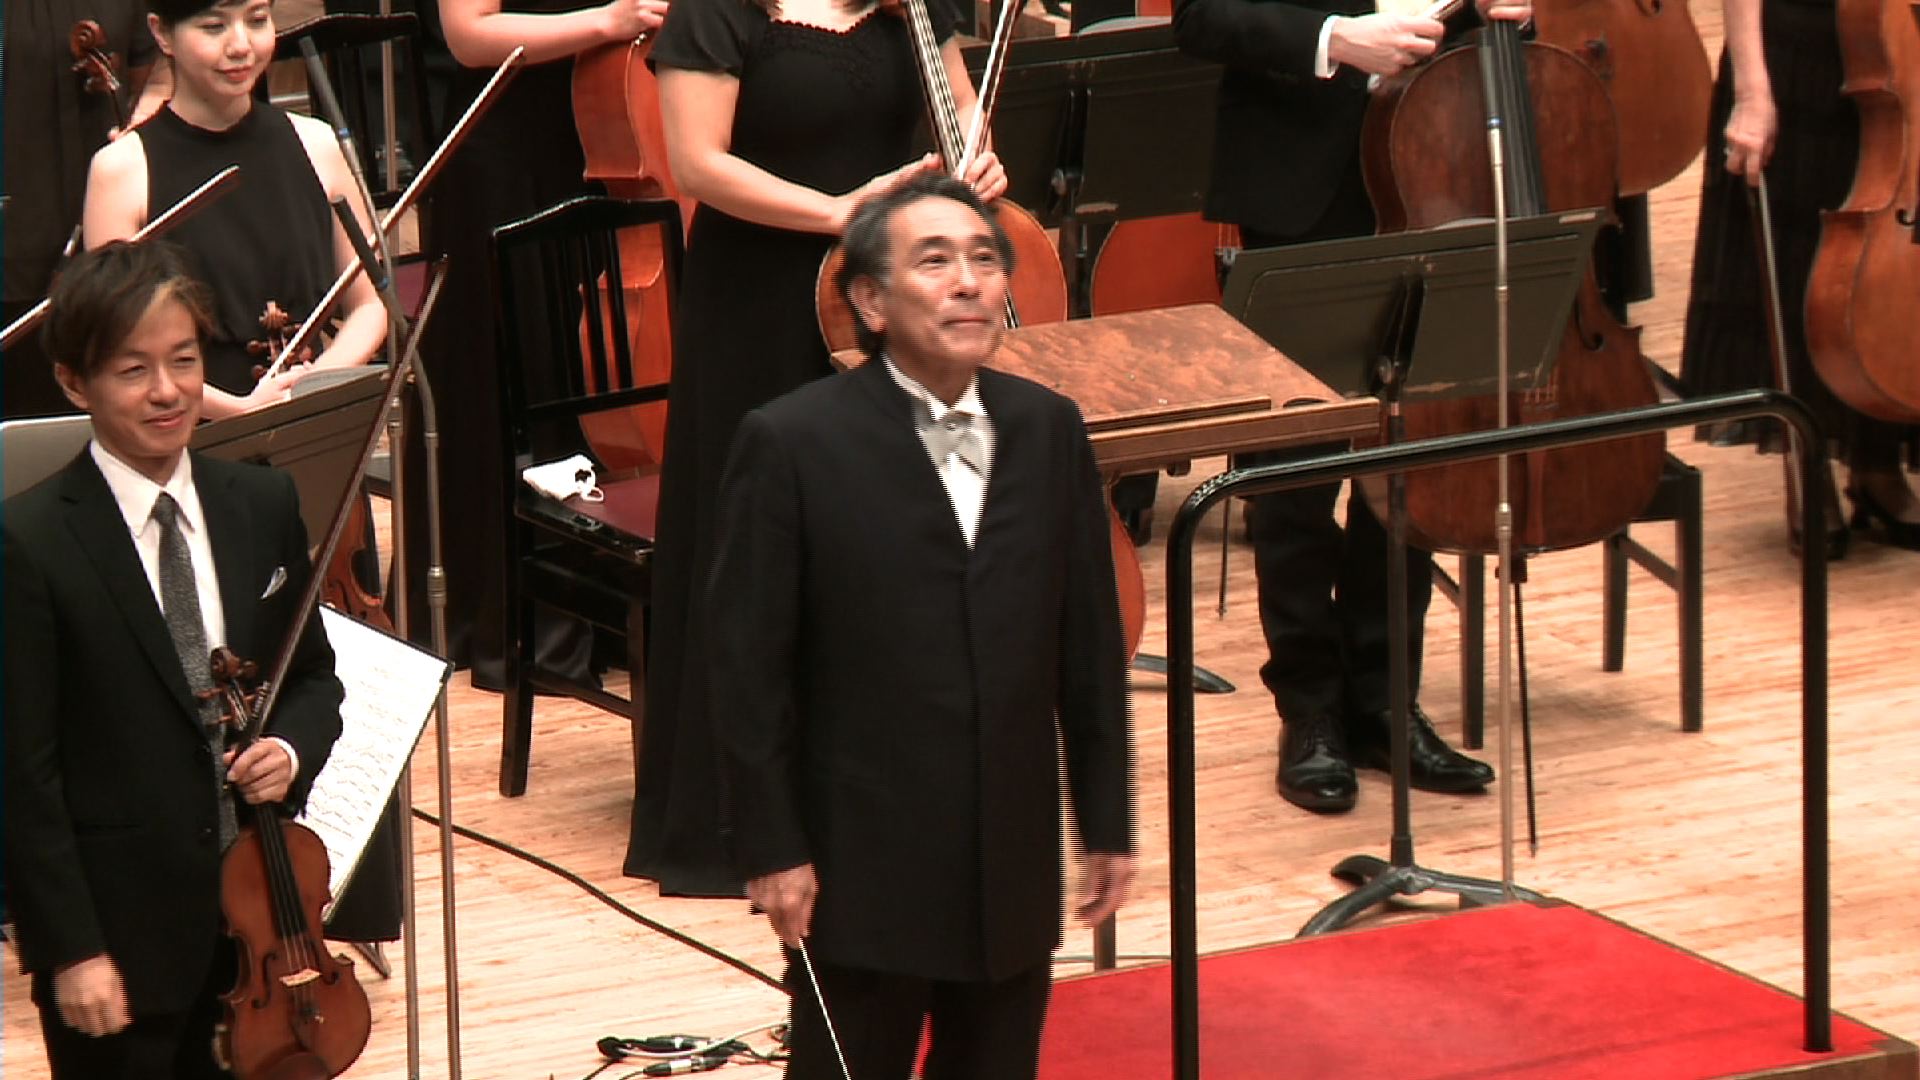 指揮・山下一史
広島交響楽団（無観客公演）
リスト：交響詩「レ・プレリュード」
Conductor:Kazufumi Yamashita
Hiroshima Symphony Orchestra
F. Liszt: Les Preludes